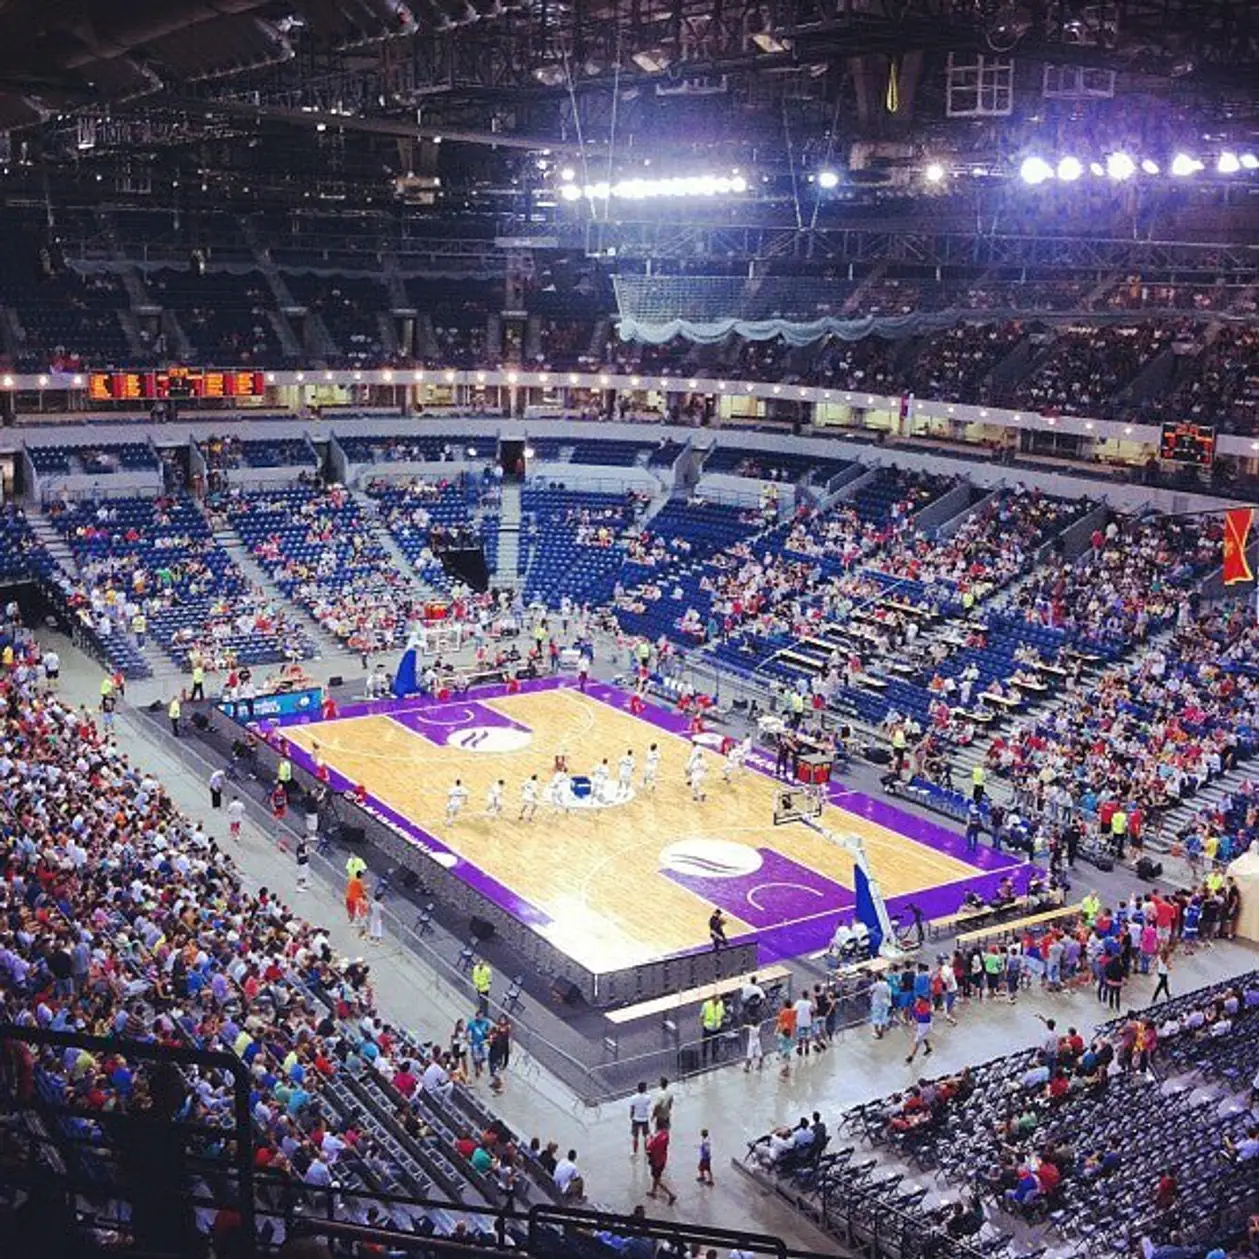 П’ять локацій Белграда для справжніх фанатів спорту